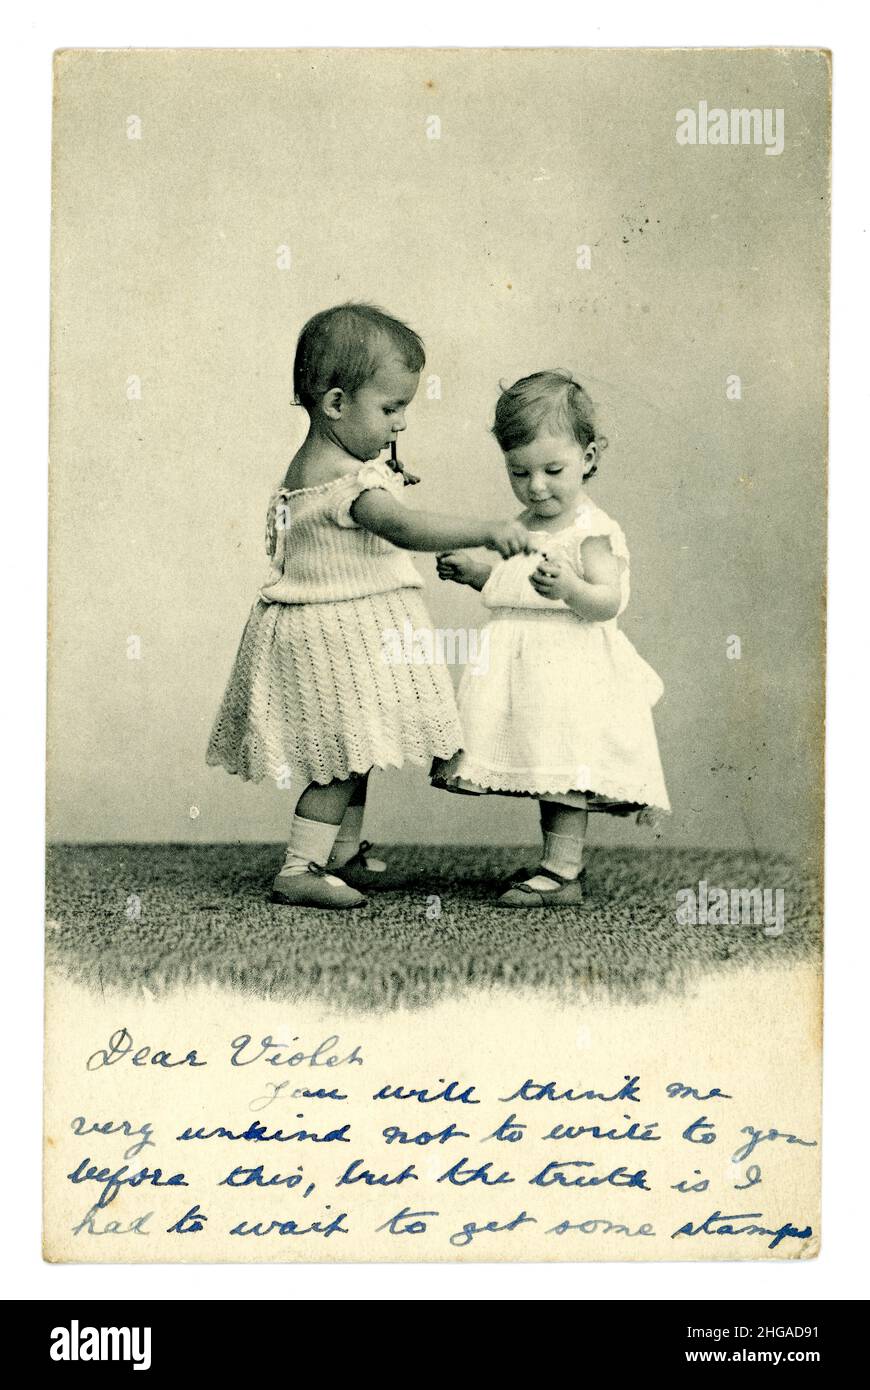 Carte postale de voeux édouardienne représentant deux enfants / tout-petits cute tenant les mains, le bébé sur la gauche est probablement un garçon portant une robe comme c'était normal à ce moment, publié en 1904 du Royaume-Uni Banque D'Images